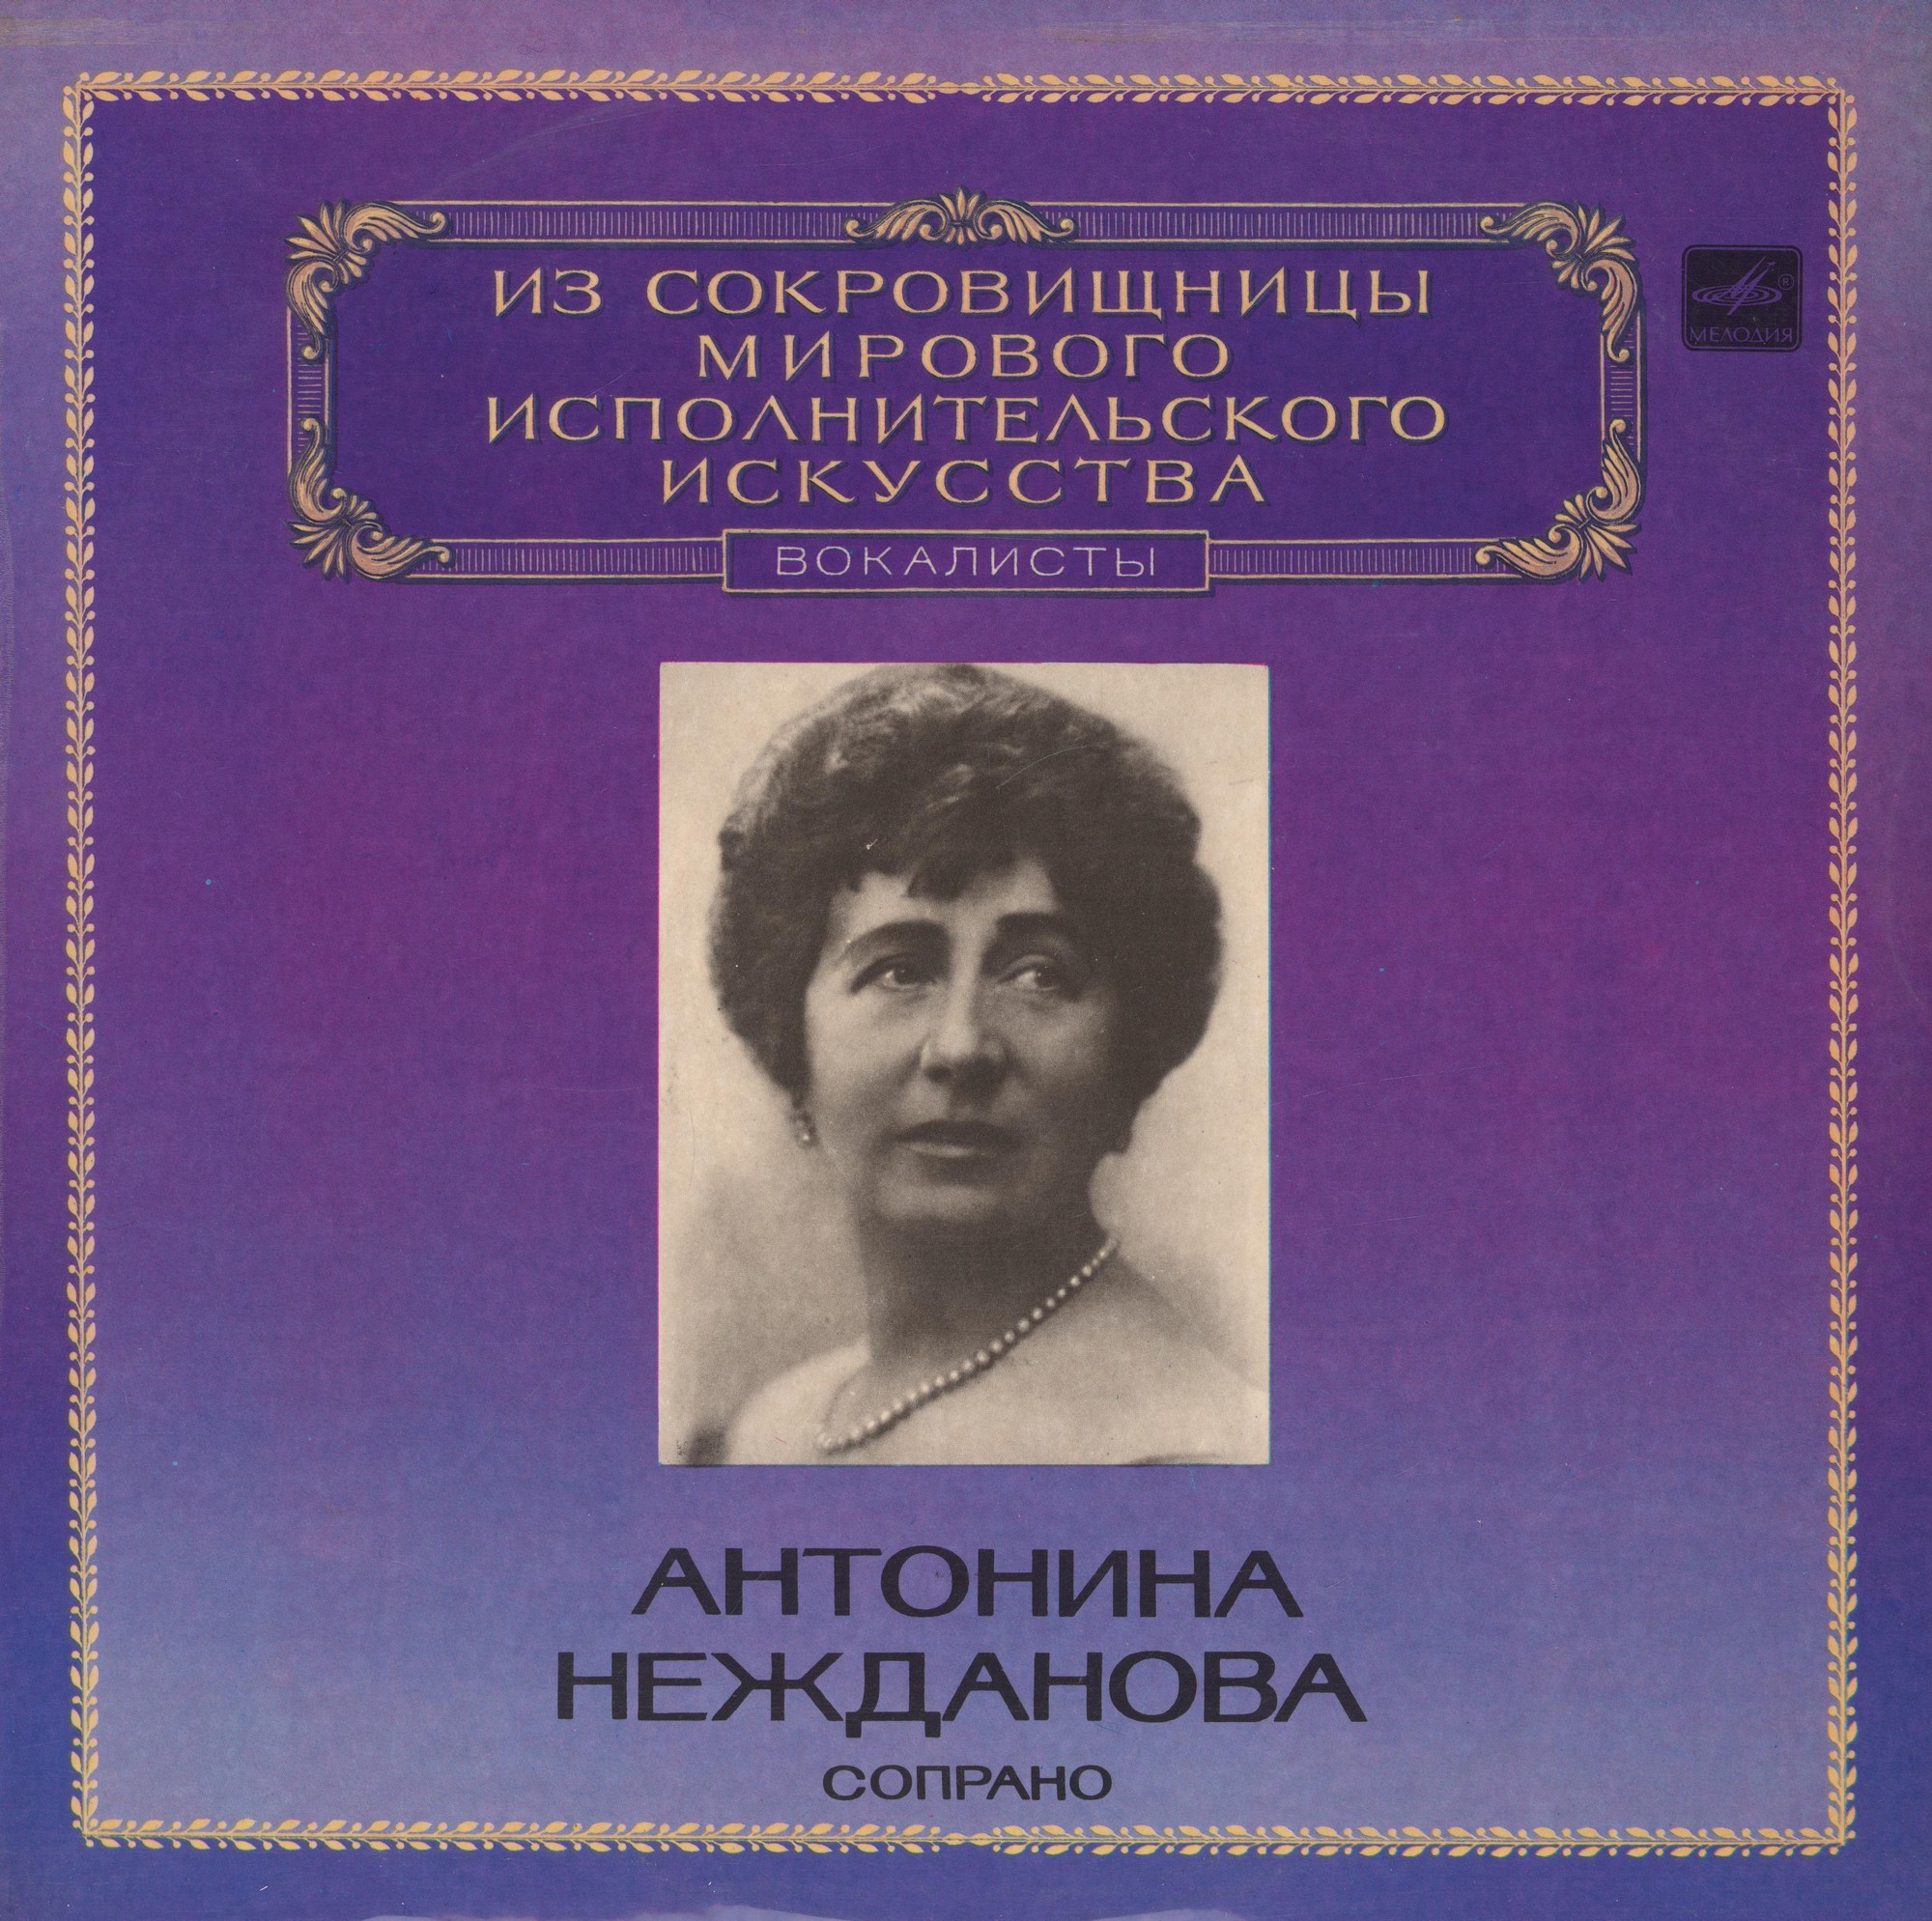 Антонина Нежданова, сопрано